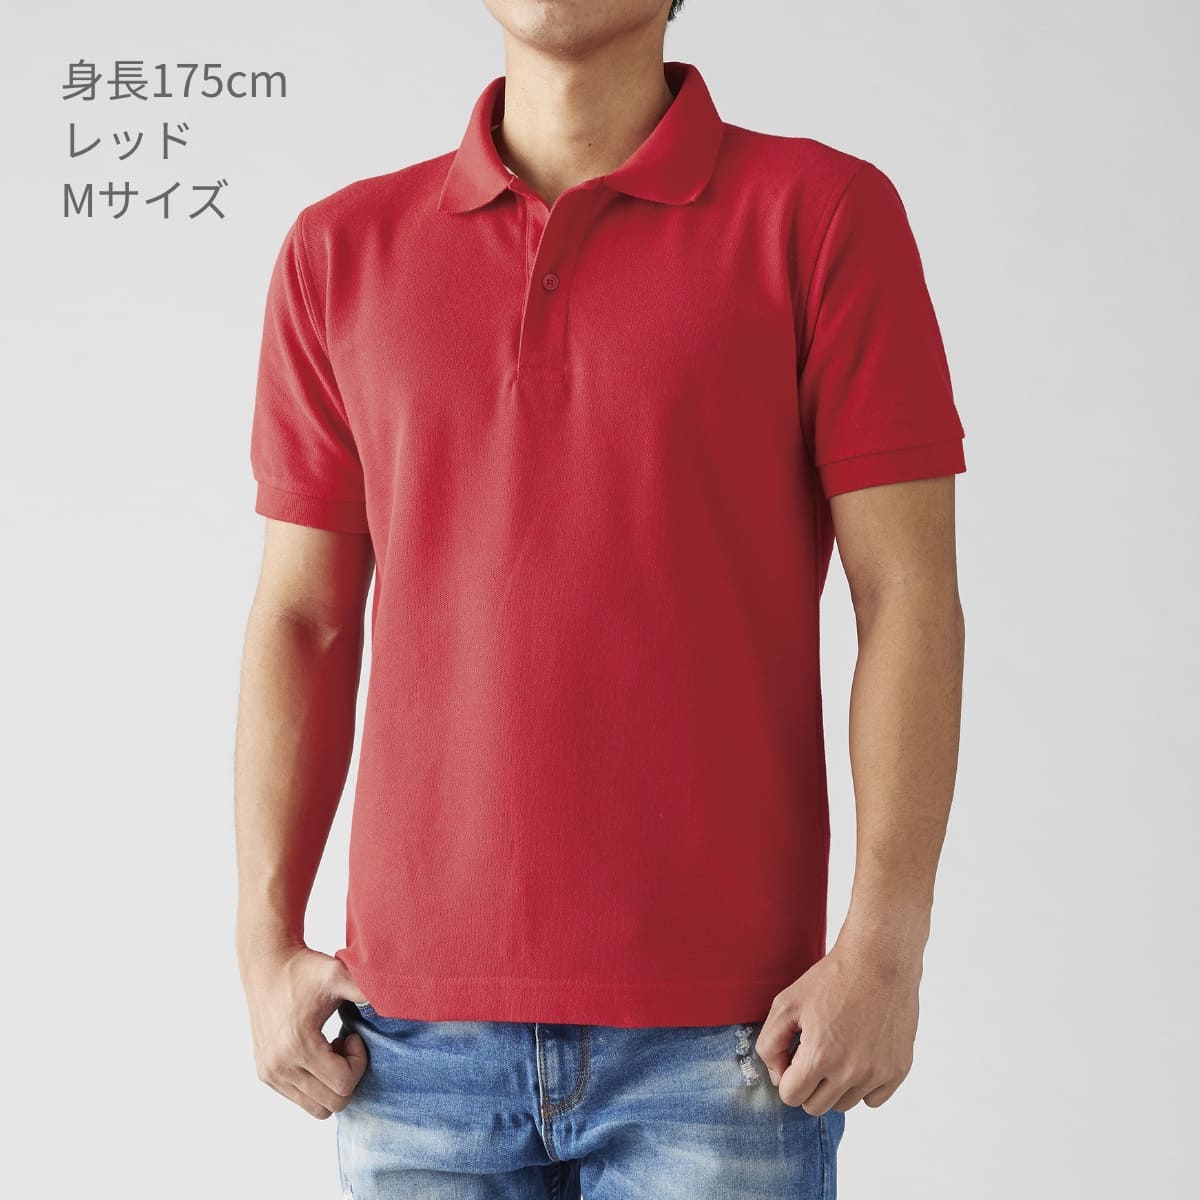 ベーシックスタイル ポロシャツ | メンズ | 1枚 | VSN-267 | レッド